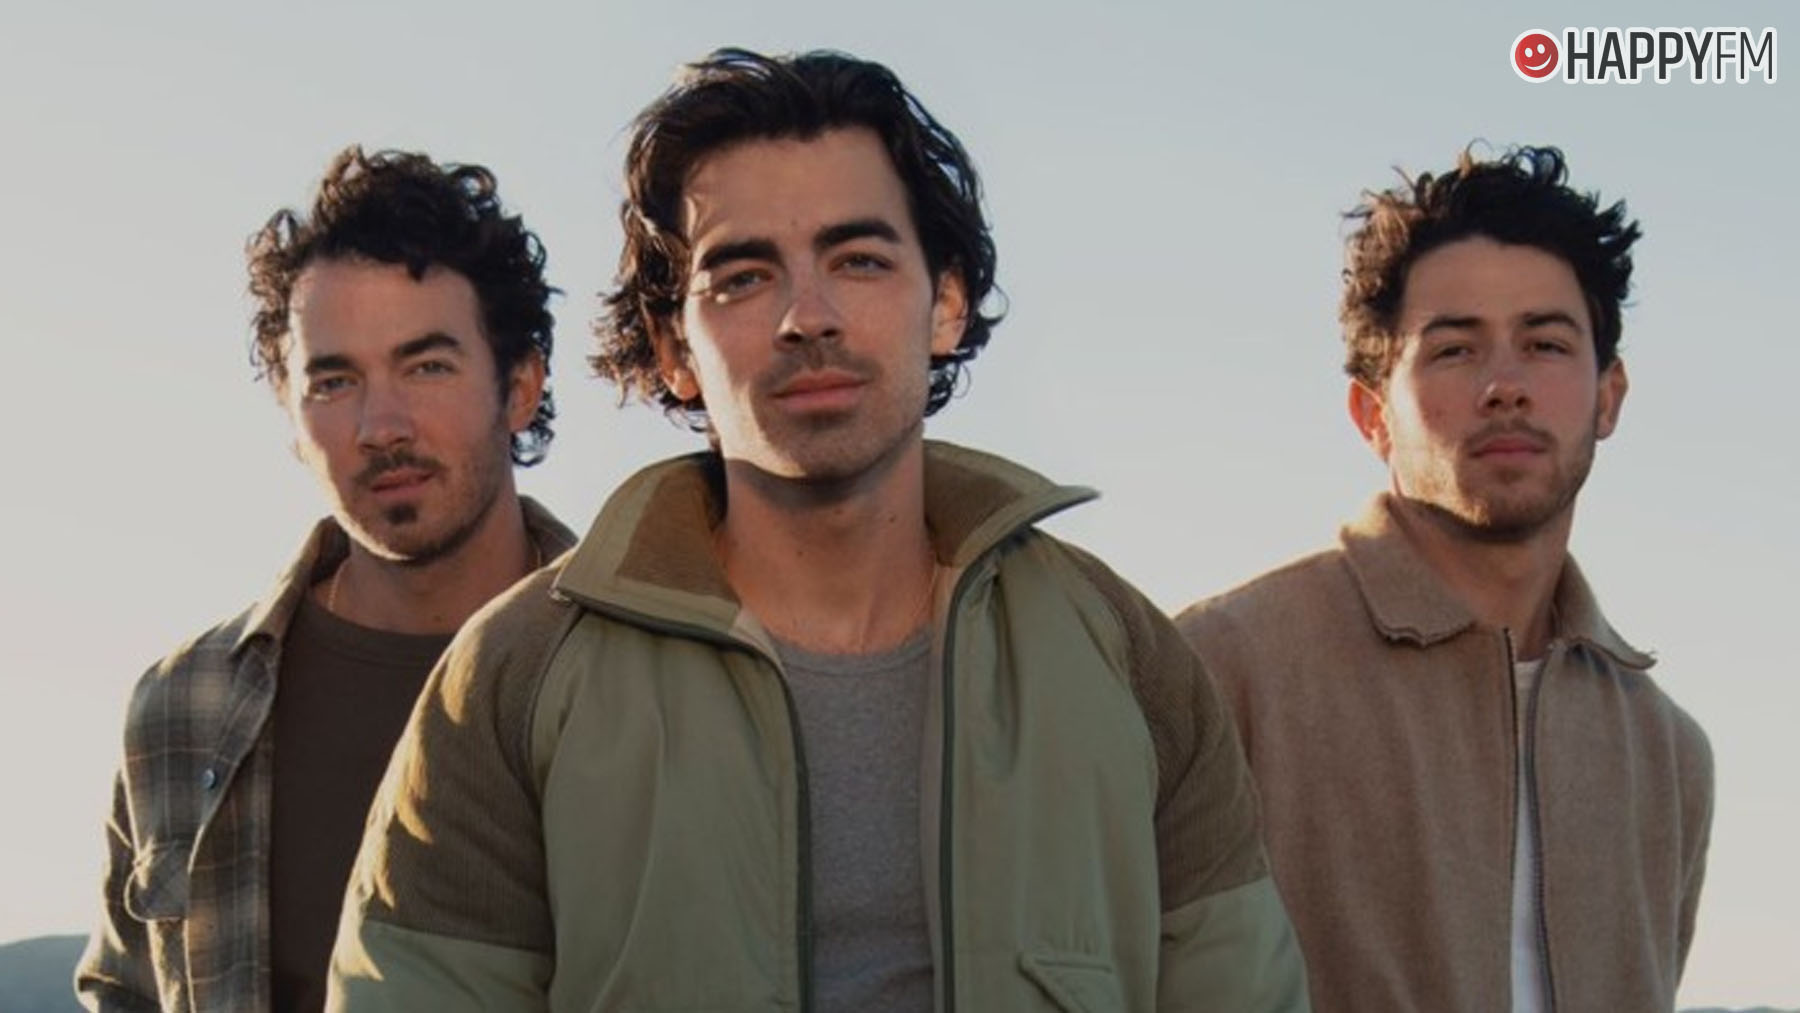 Jonas Brothers.